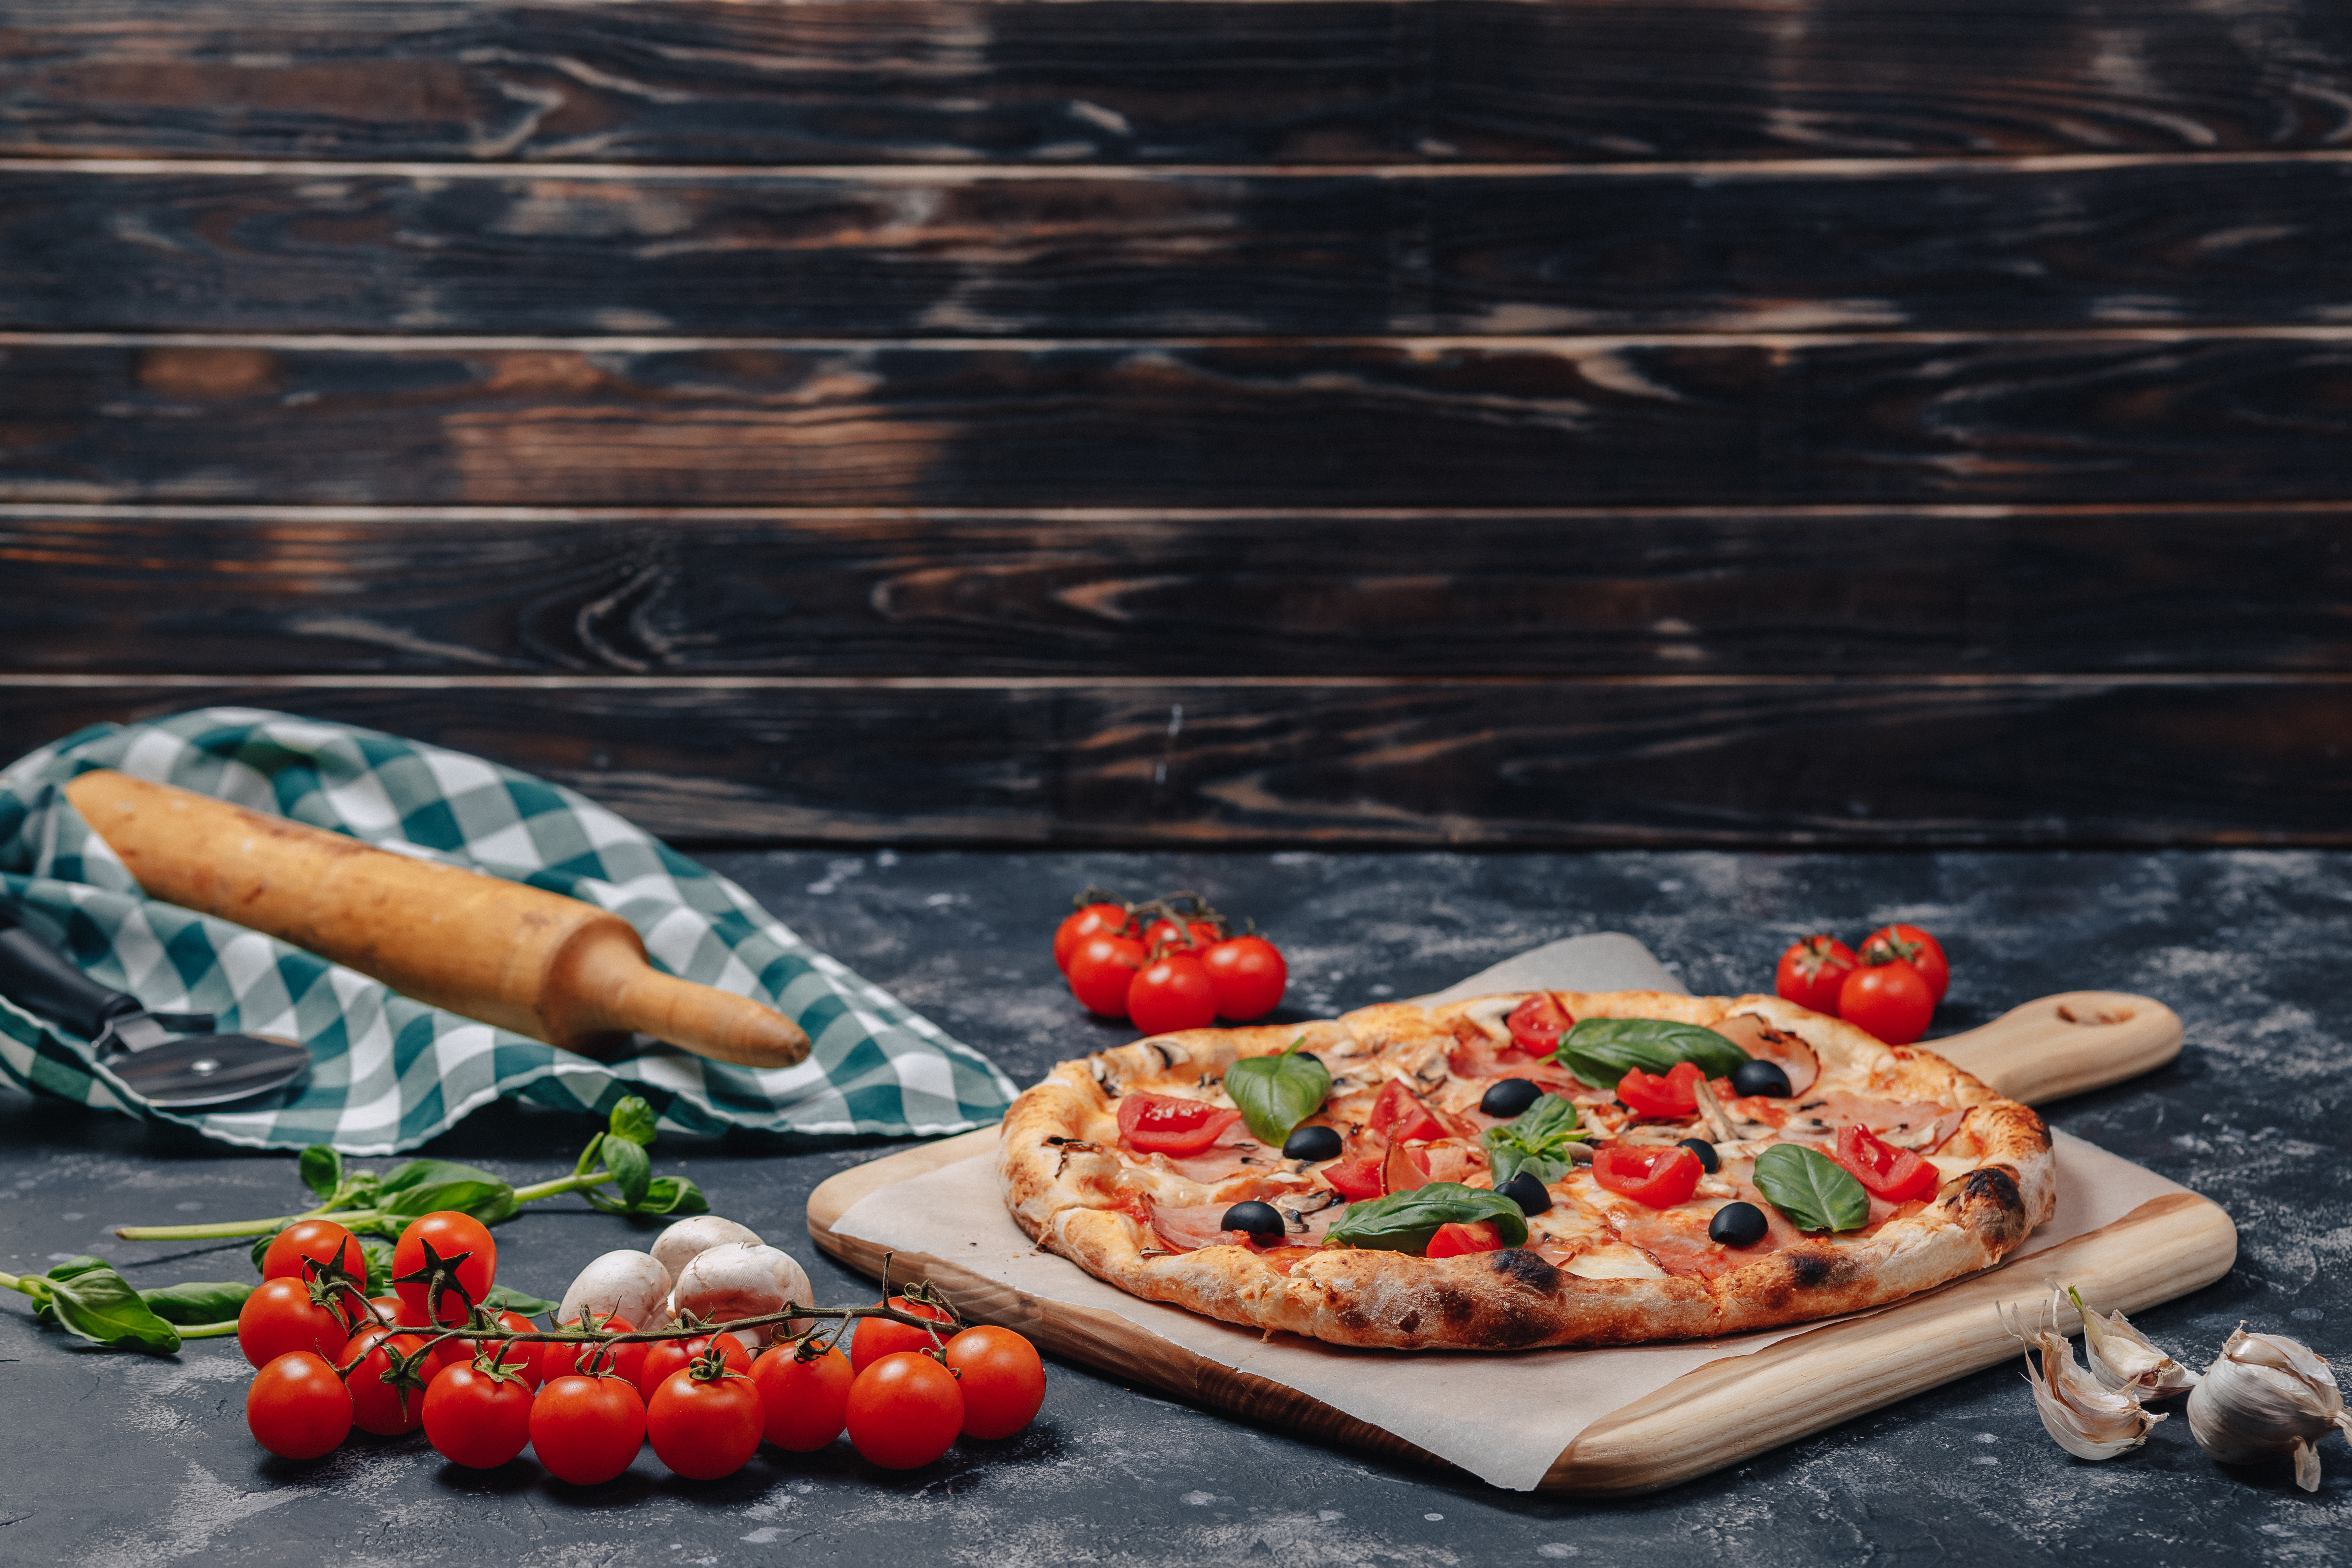 Nel capoluogo della pizza napoletana, la Margarita è stata creata in un modo speciale: è stata utilizzata la bandiera italiana